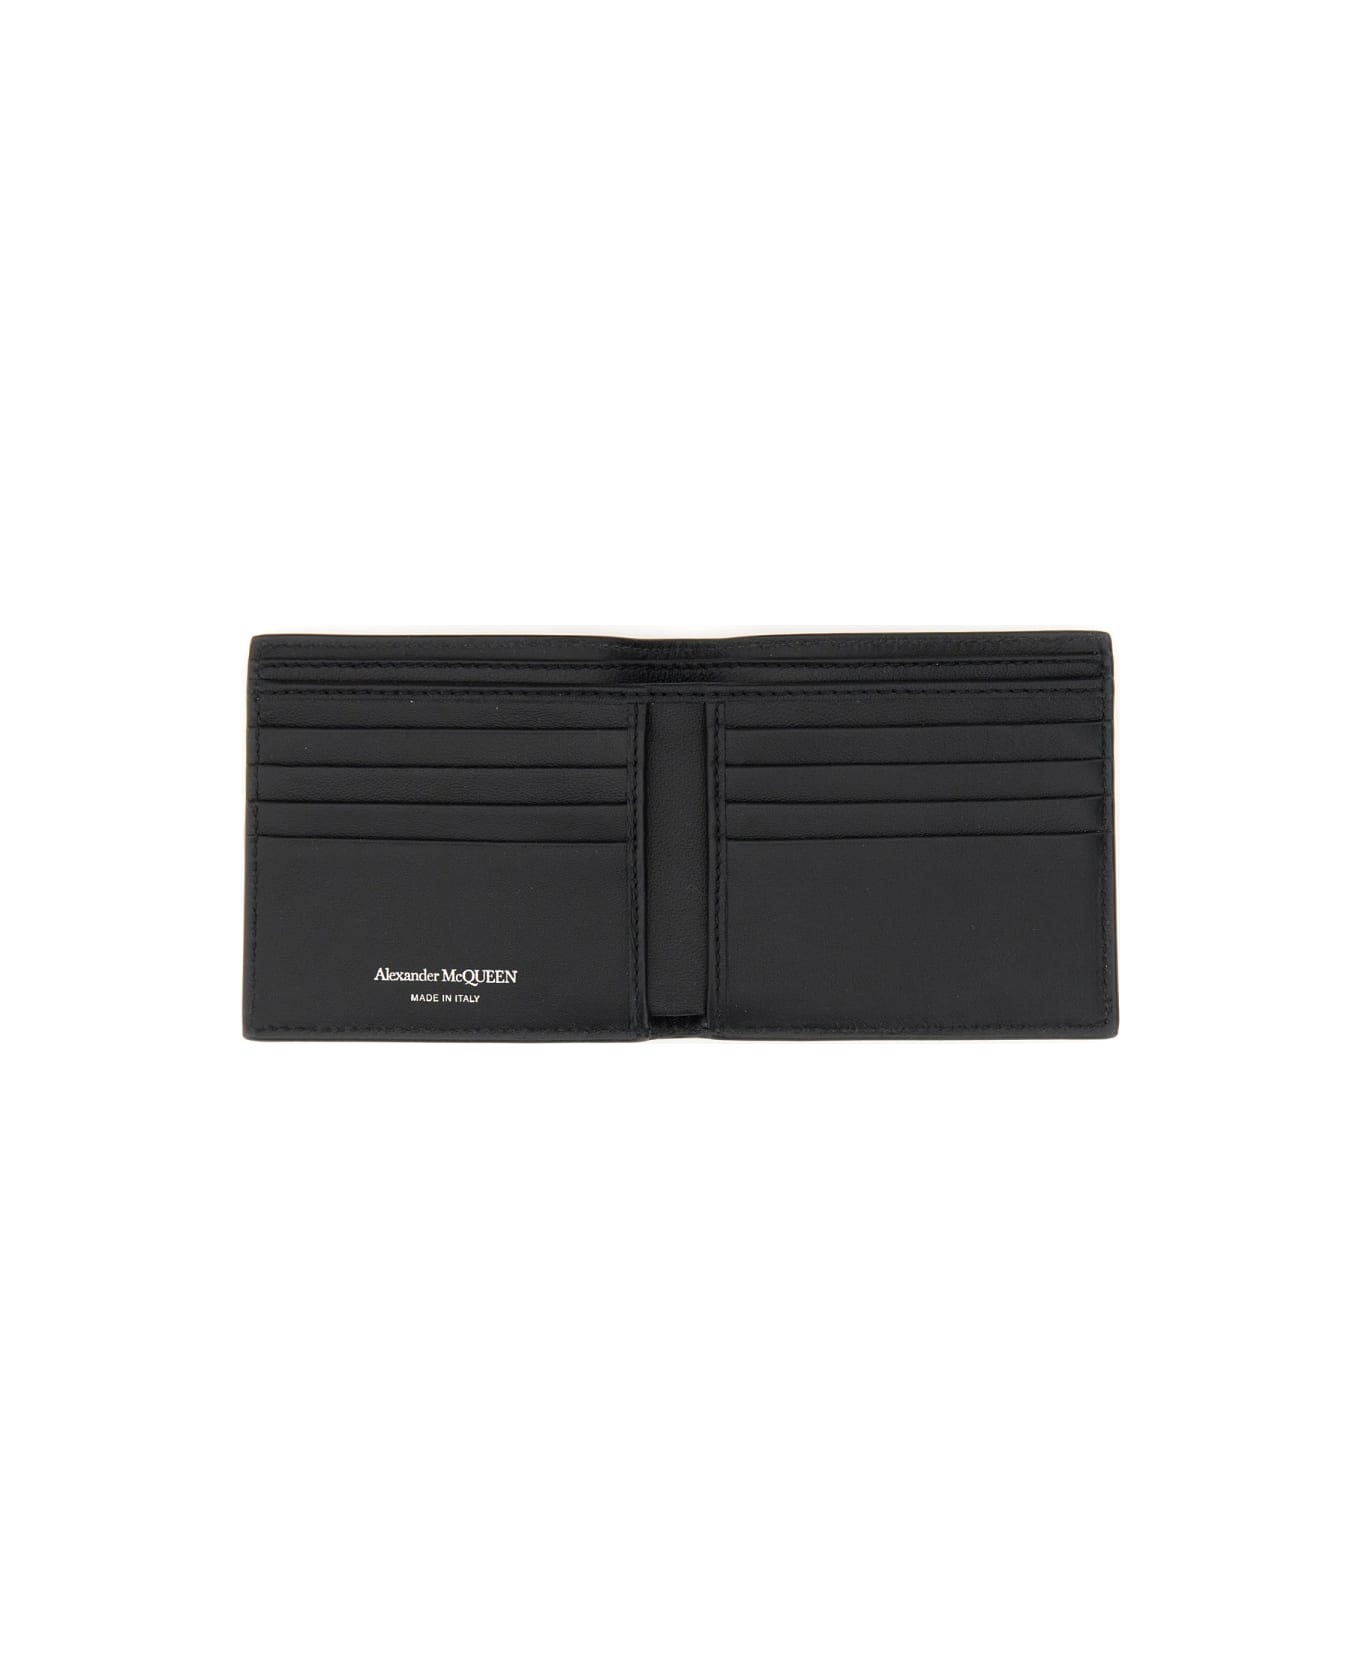 Alexander McQueen Leather Wallet - BLACK